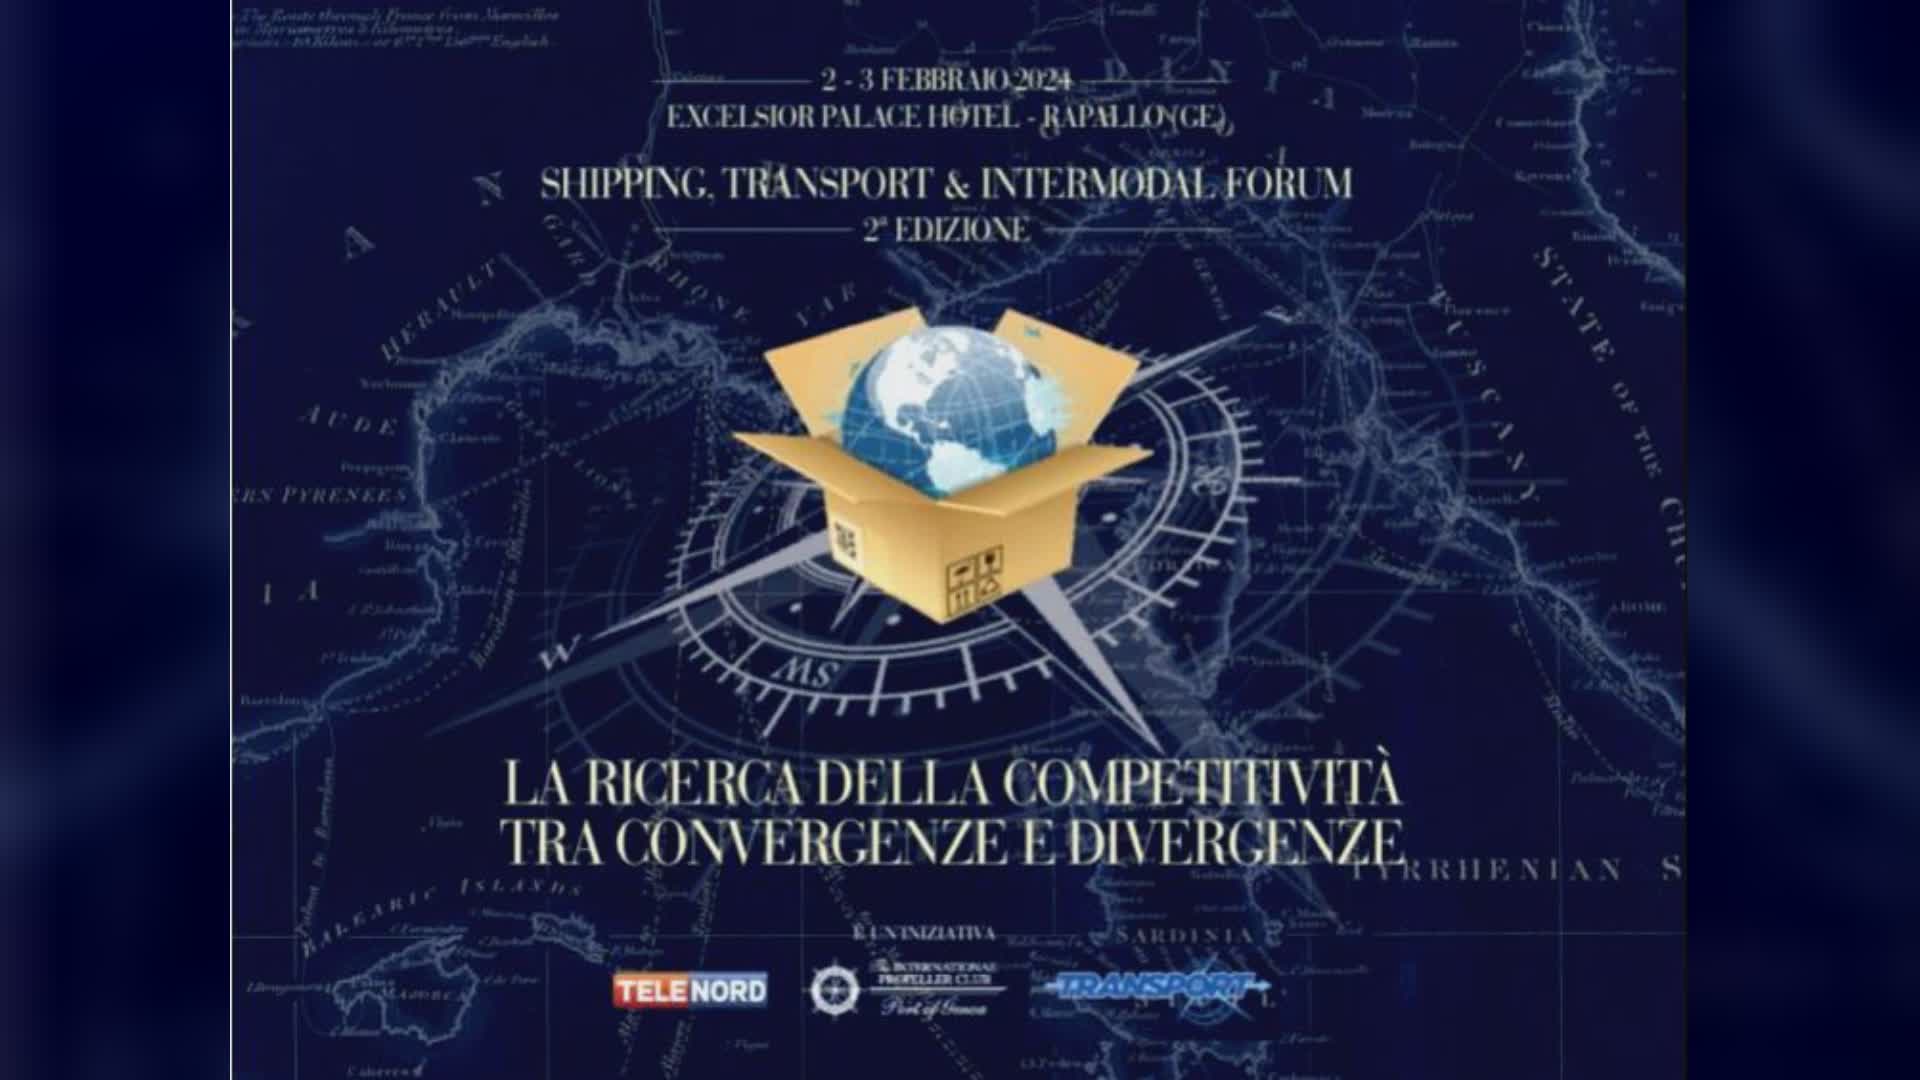 Rapallo: "Shipping, Transport & Intermodal Forum", il 2 e 3 febbraio 2a edizione all'Excelsior Palace Hotel